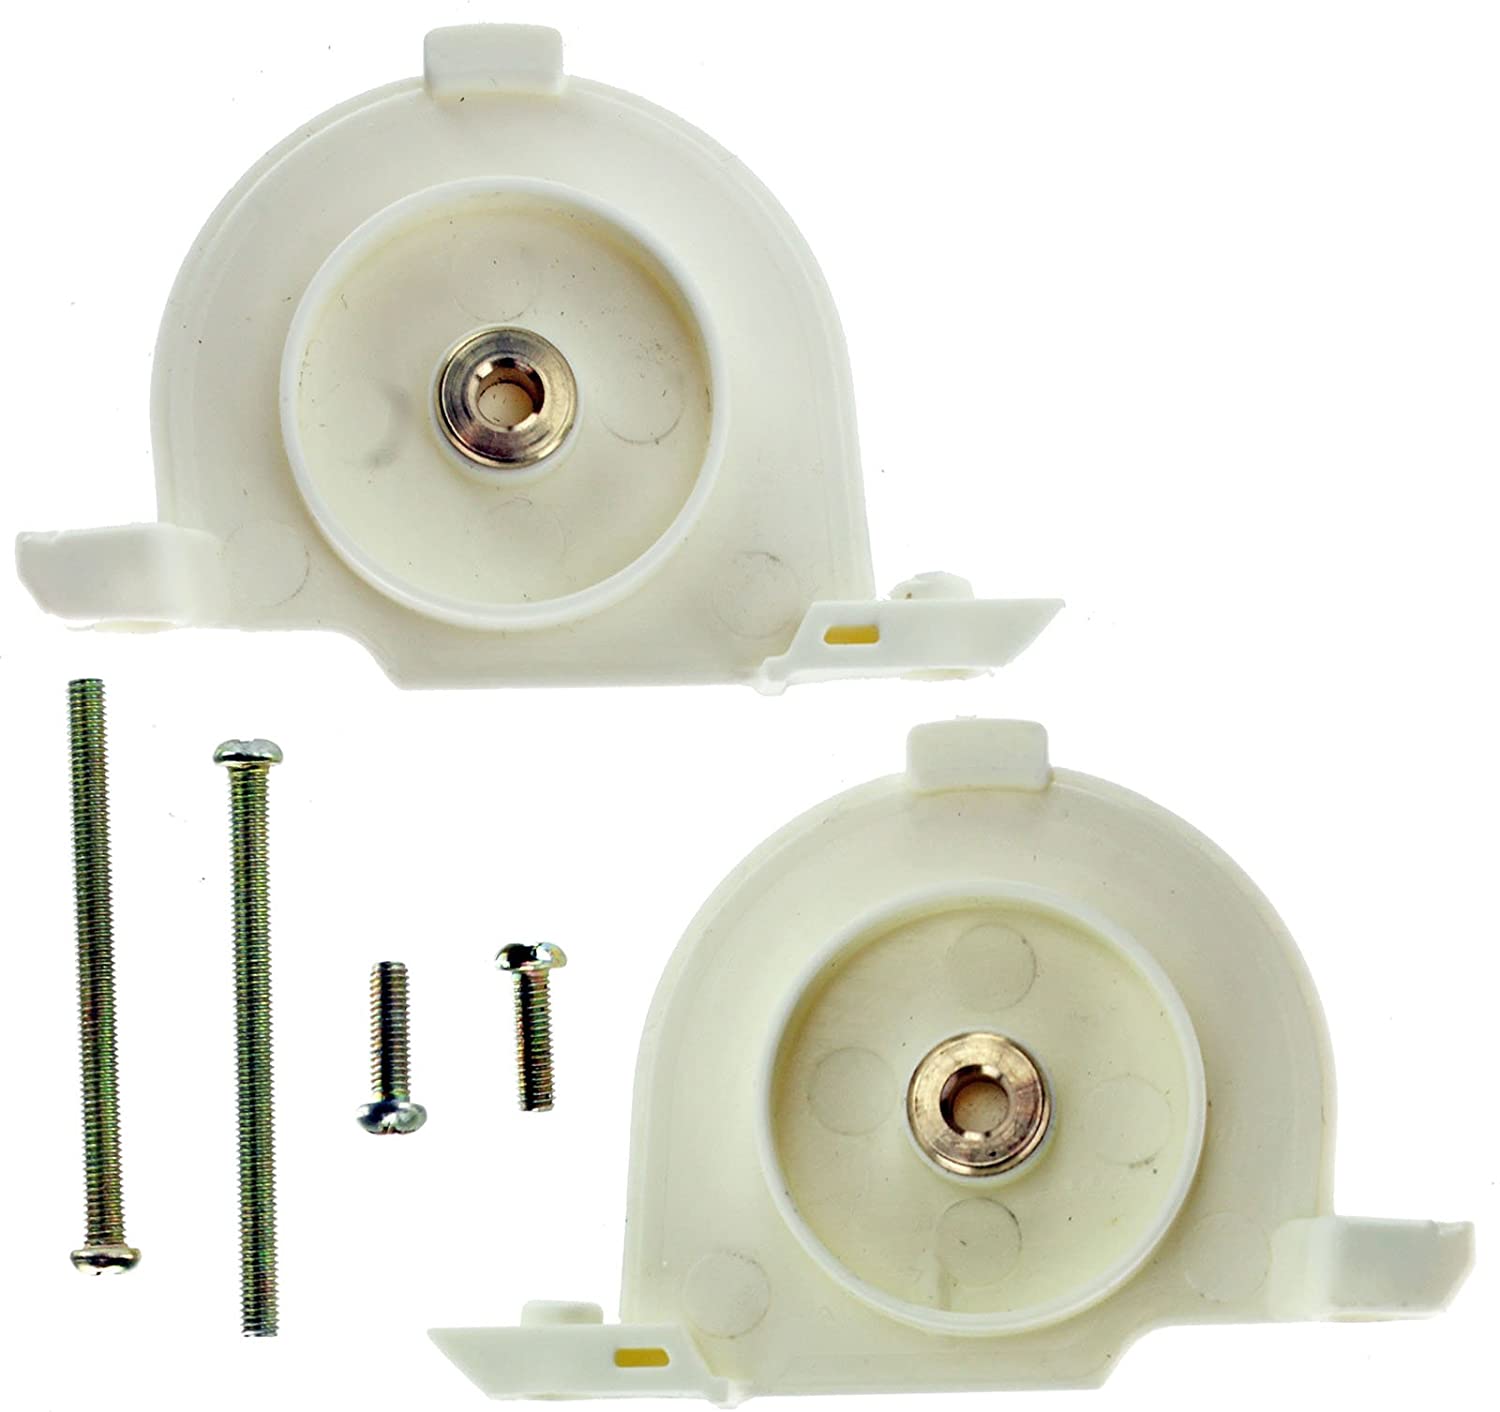 Complete Brushroll End Caps Kit for GTech AirRam DM001 AR02 AR01 AR03 AR05 Cordless Vacuum Cleaner